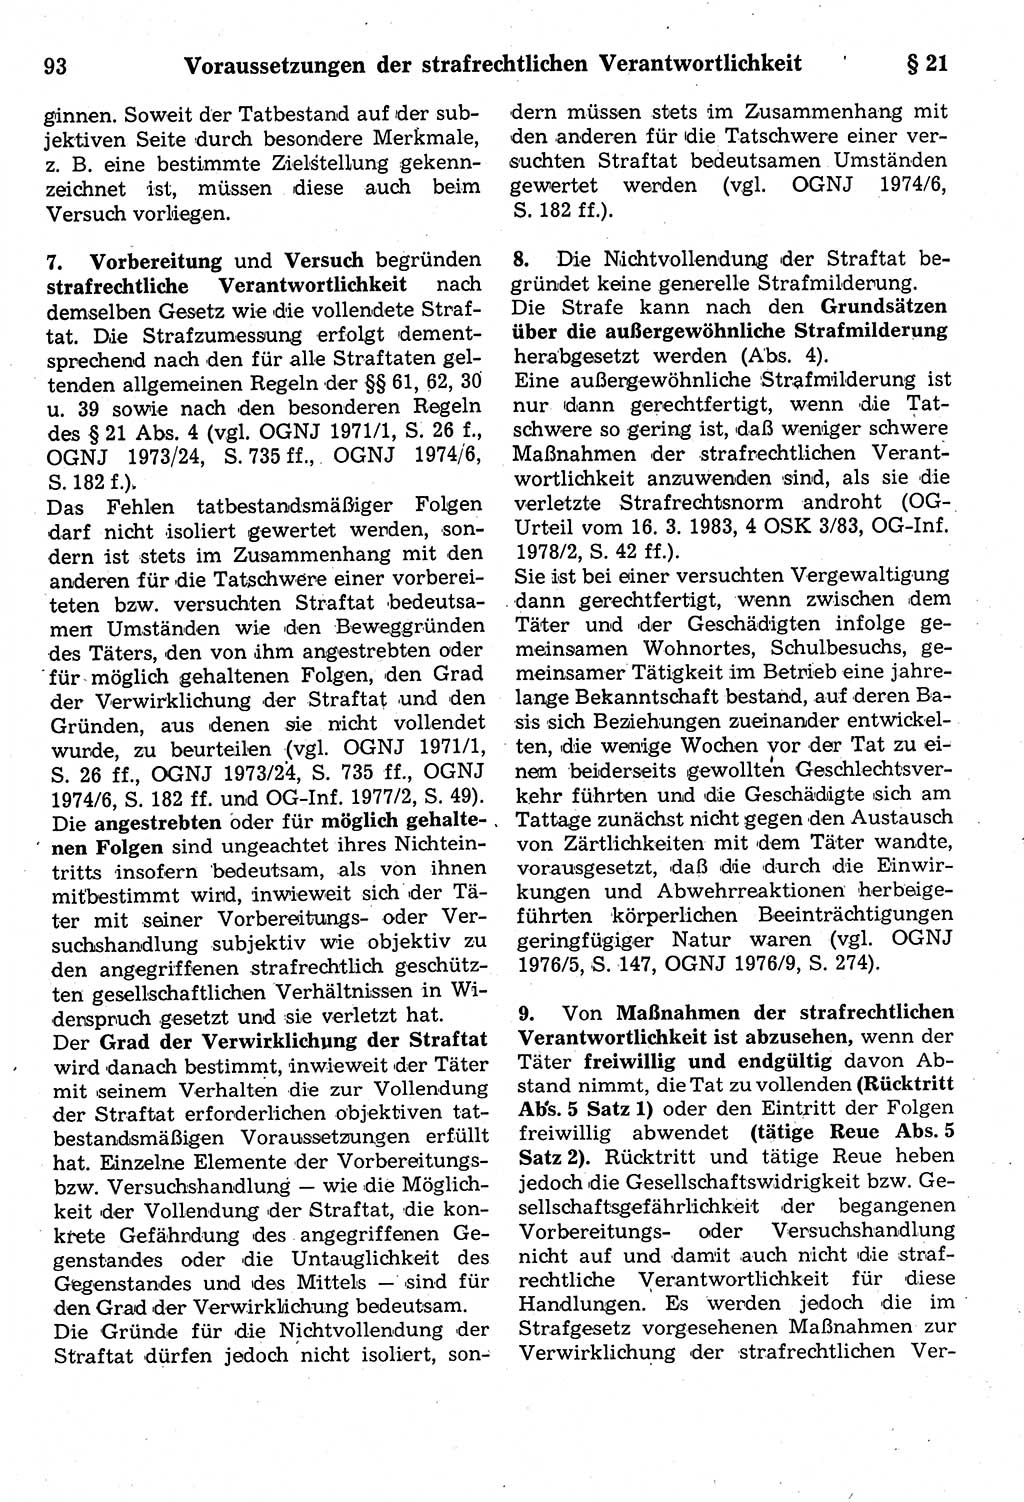 Strafrecht der Deutschen Demokratischen Republik (DDR), Kommentar zum Strafgesetzbuch (StGB) 1987, Seite 93 (Strafr. DDR Komm. StGB 1987, S. 93)